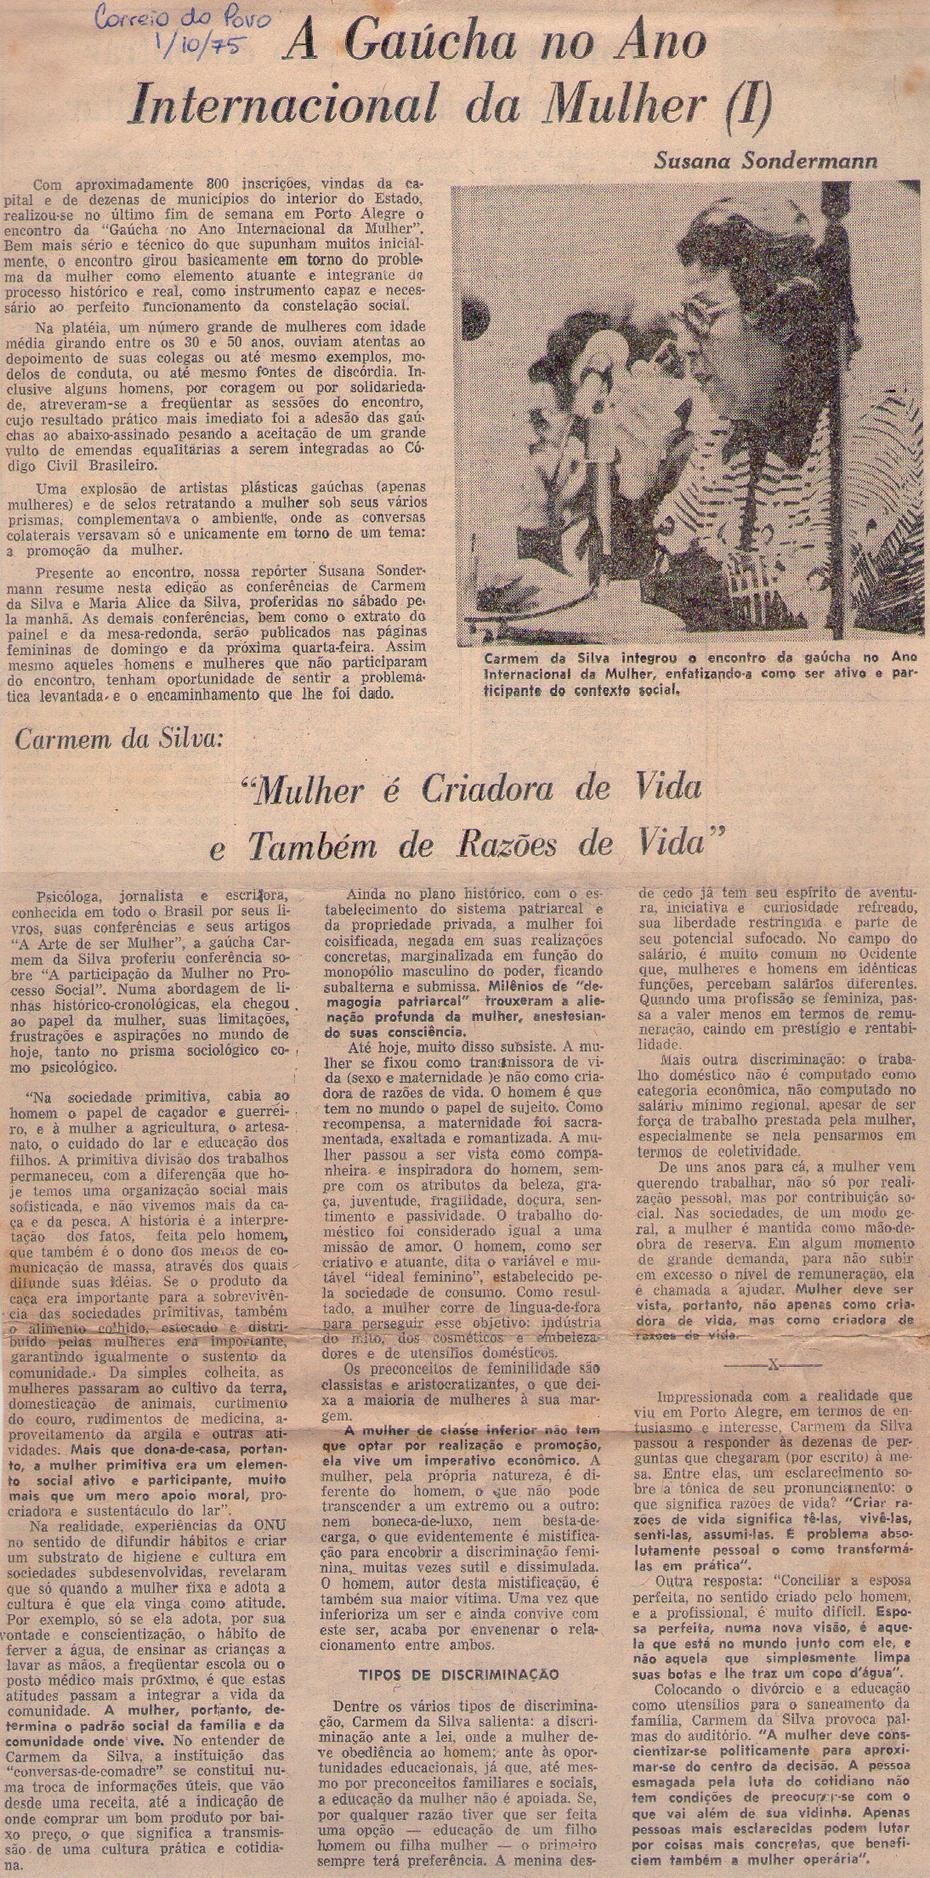 1 de Outubro de 1975 - Correio do Povo. A Gaúcha no Ano Internacional da Mulher.